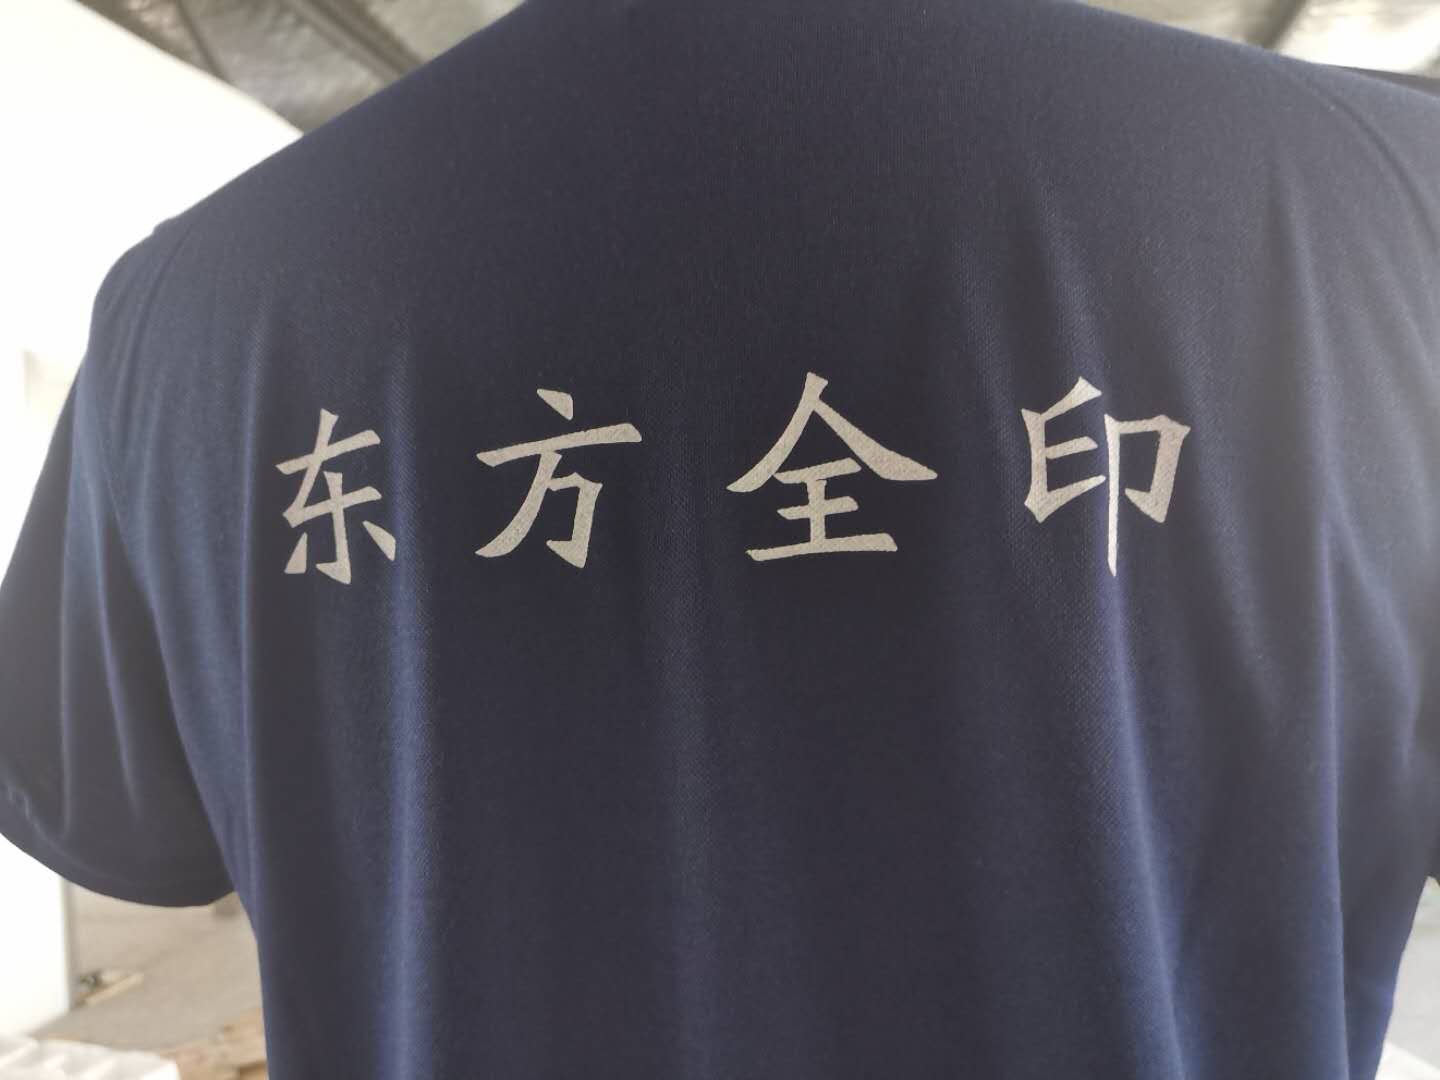 沈阳东方全印科技工作服t恤衫款式